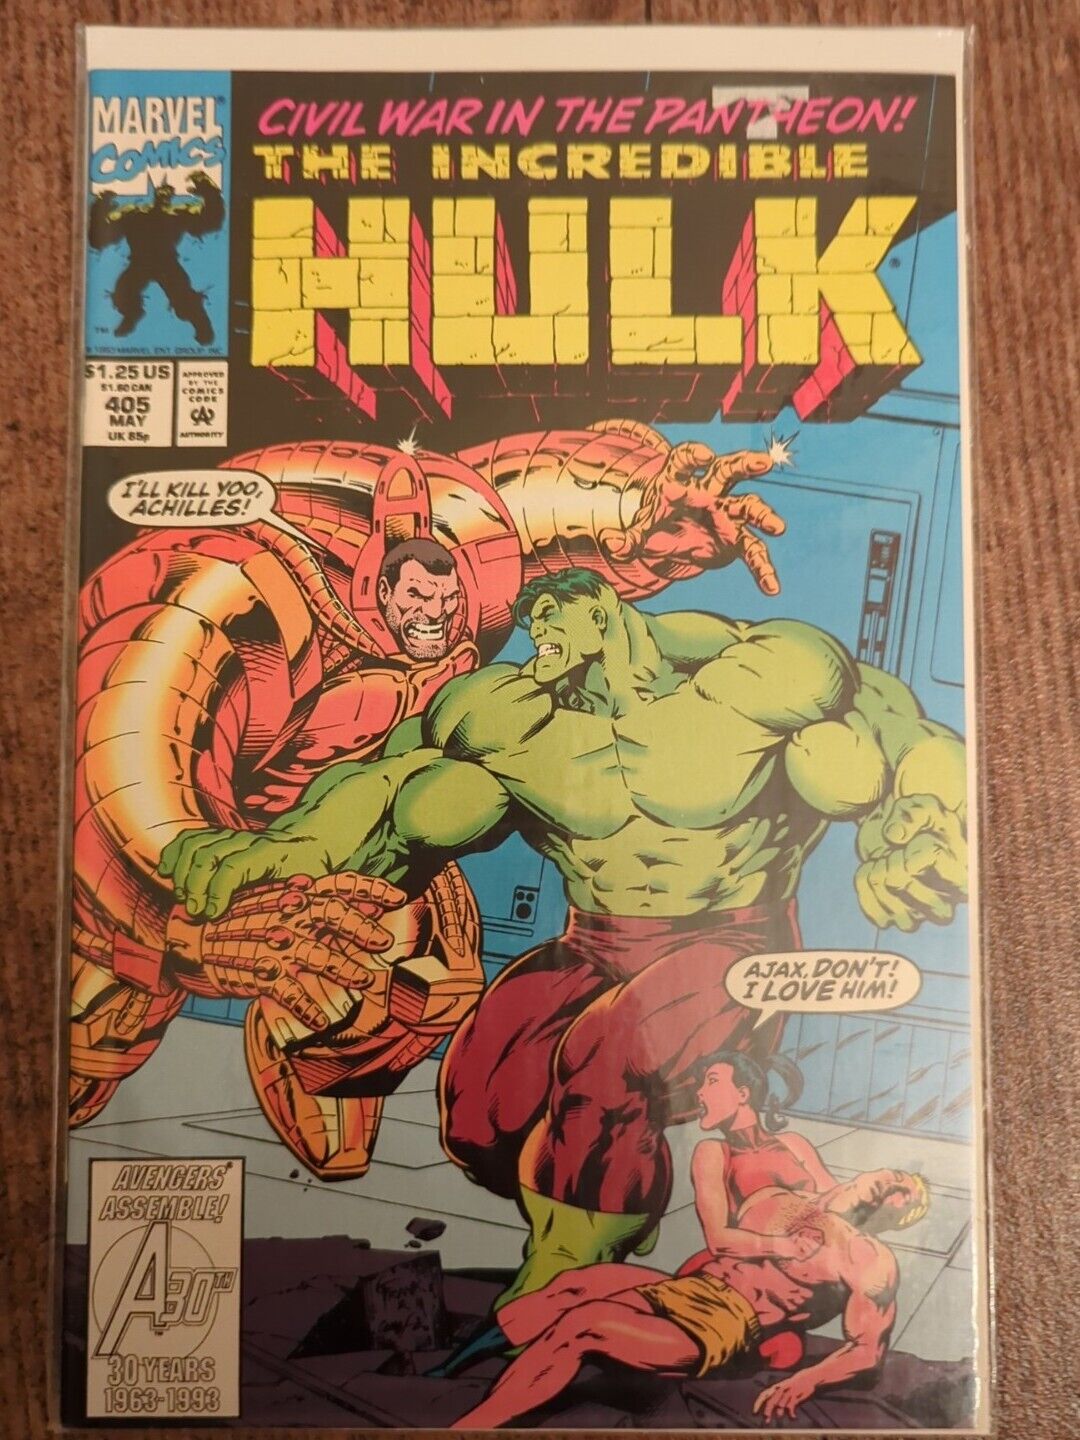 The Incredible Hulk #405 1993 Marvel Comic Book Ajax Civil War In The Pantheon